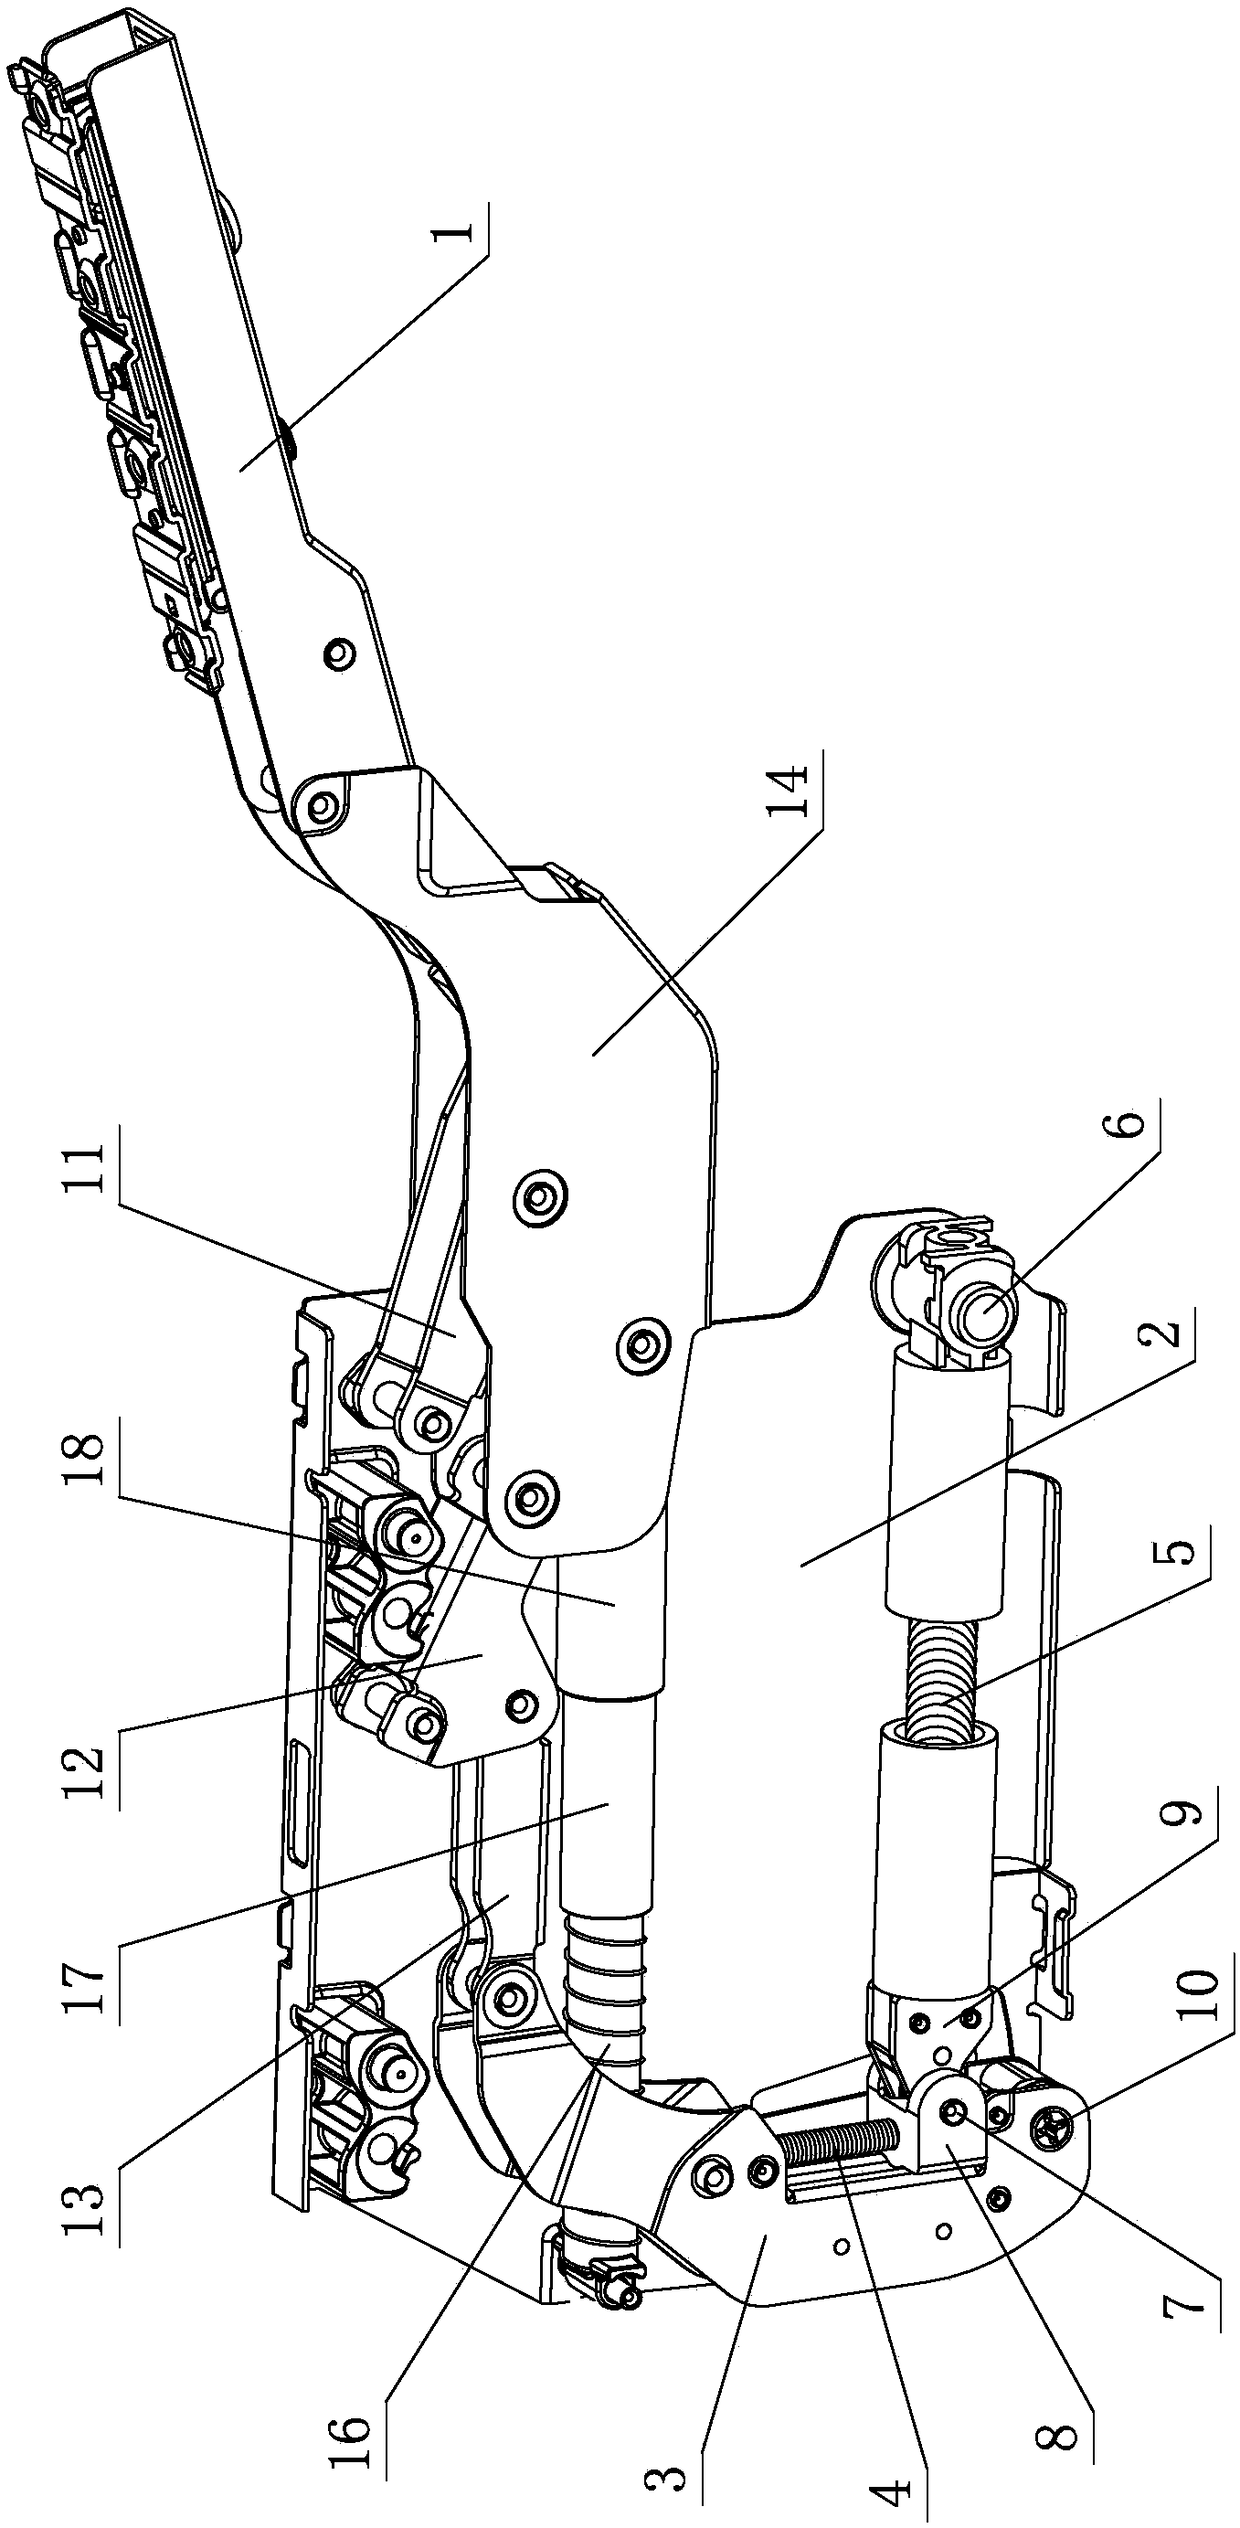 Flip linkage adjustment mechanism for furniture